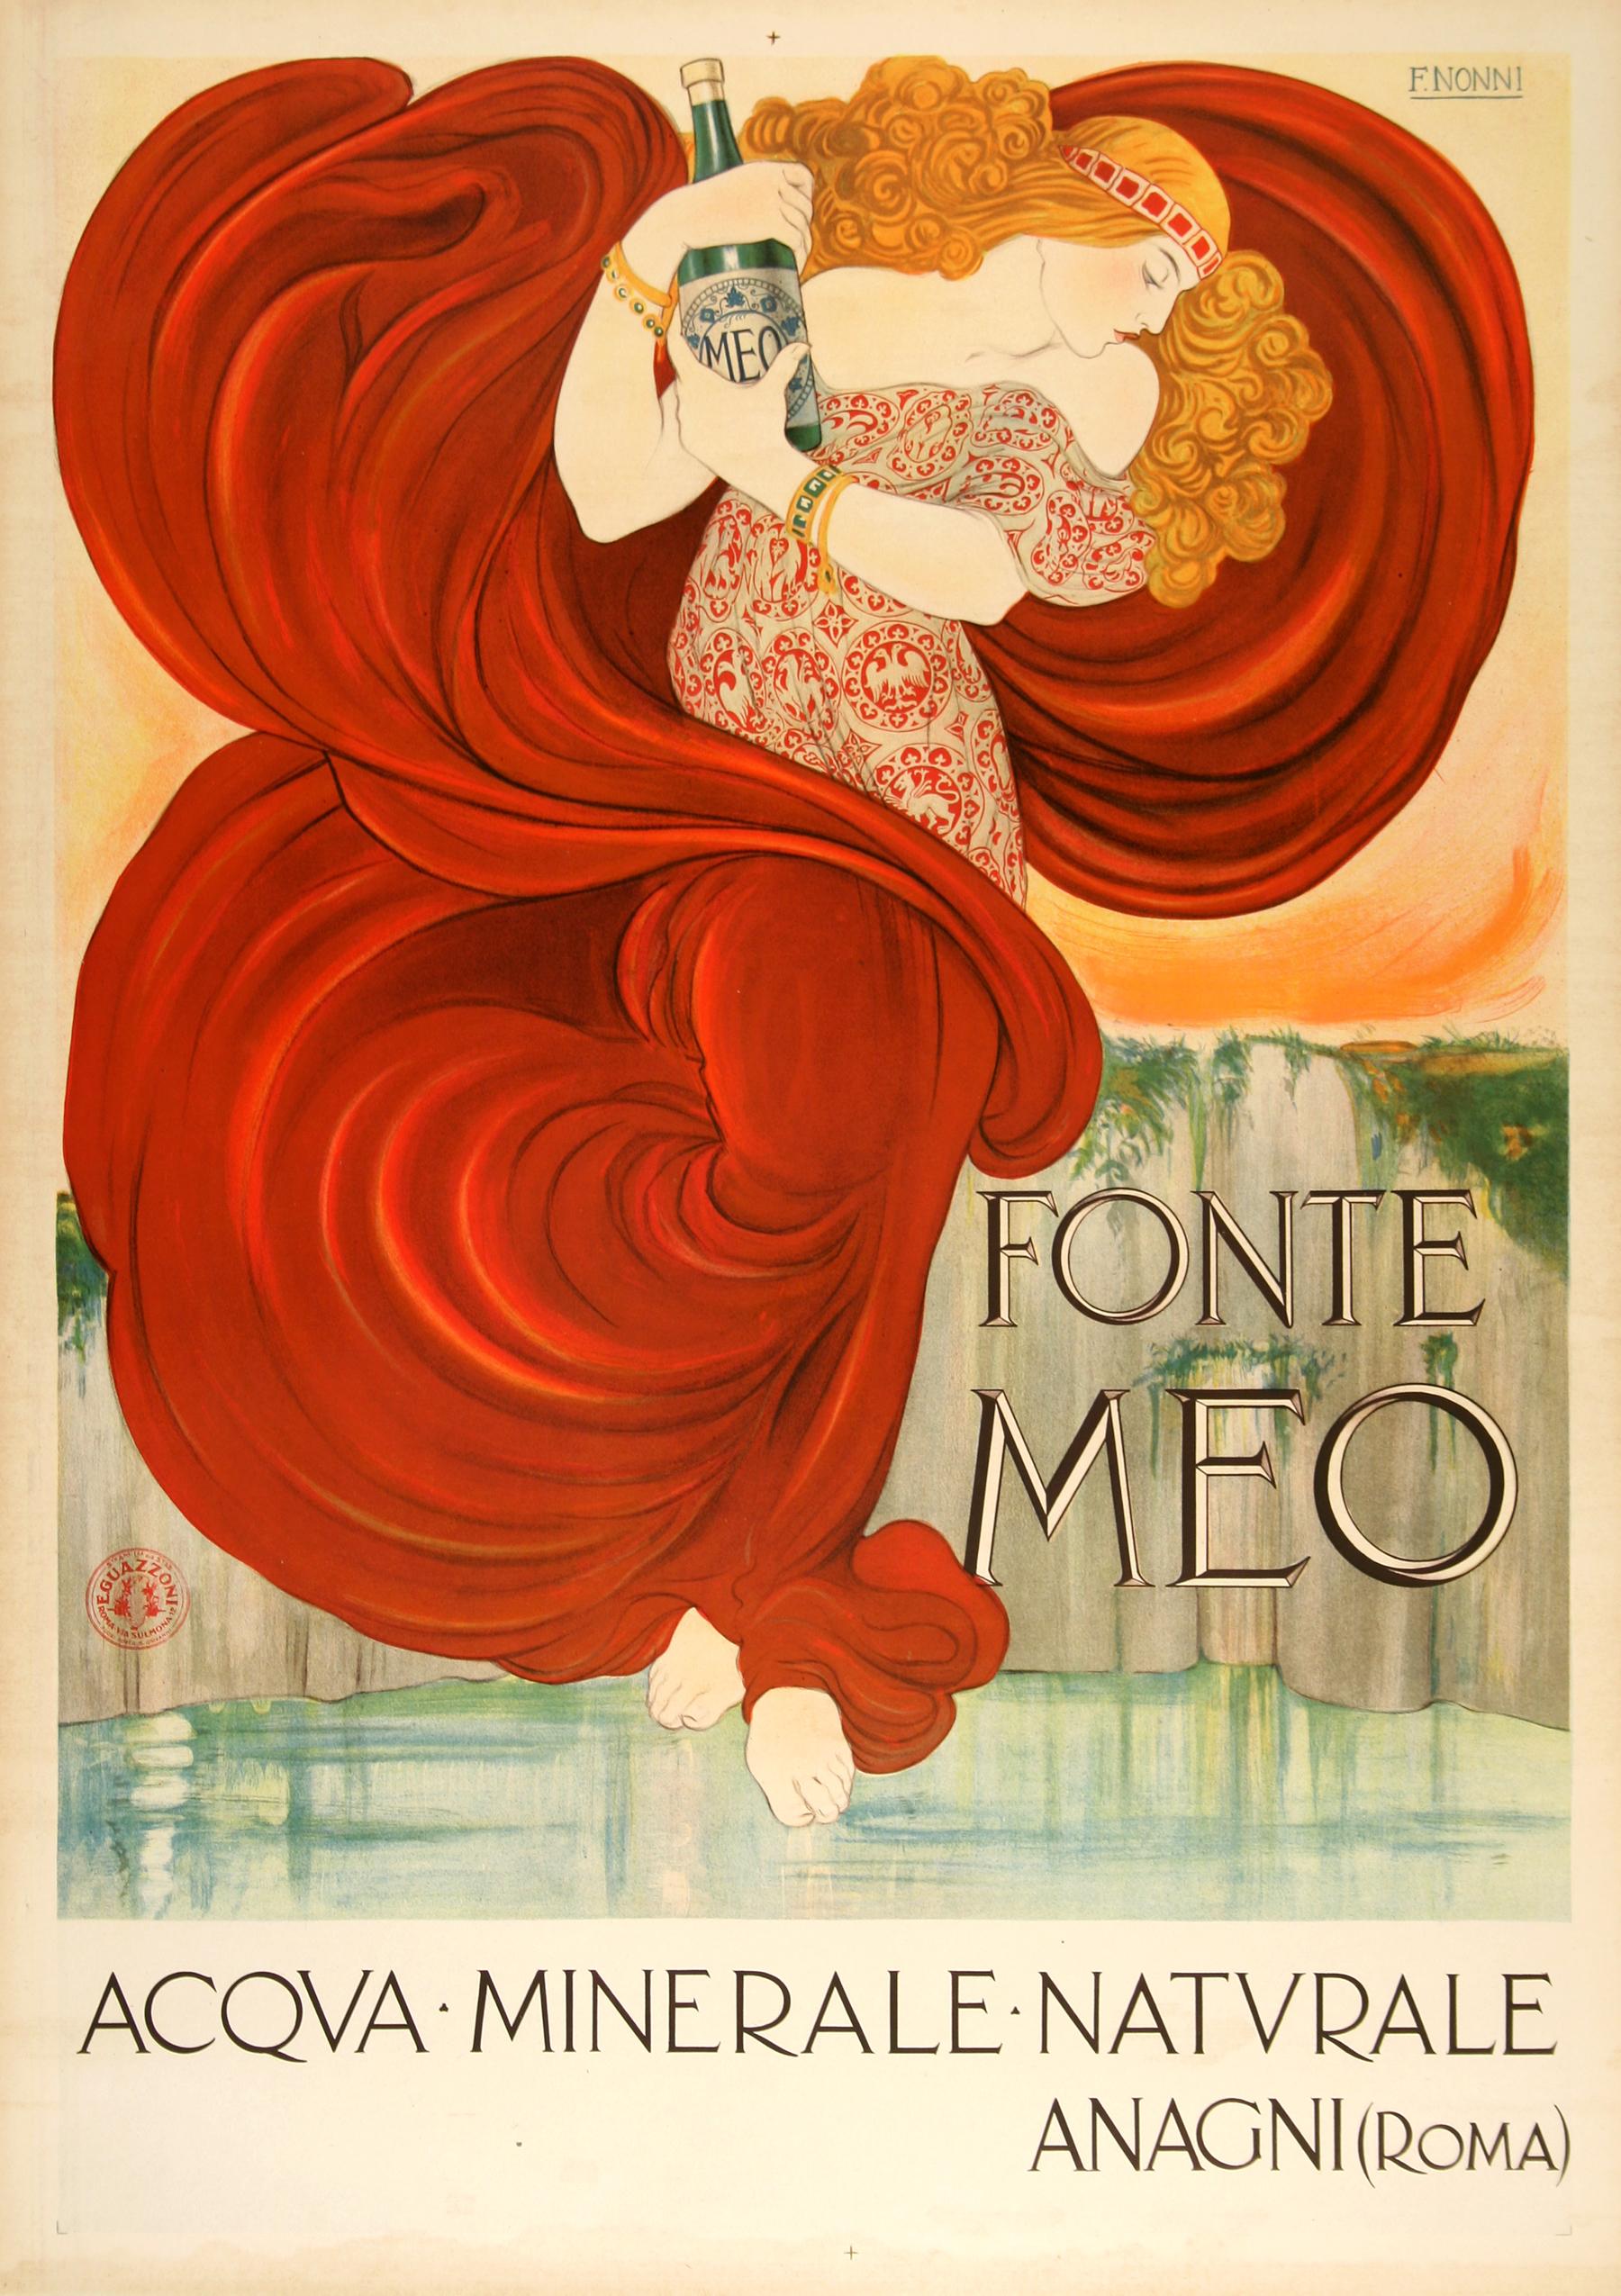 Der italienische Einfluss des Stils ist in diesem schönen Plakat, das um 1910 von dem Künstler Nonni geschaffen wurde, deutlich erkennbar. Er bedient sich des Einflusses des französischen Jugendstils, verleiht ihm aber seinen eigenen Stil. Bei dem